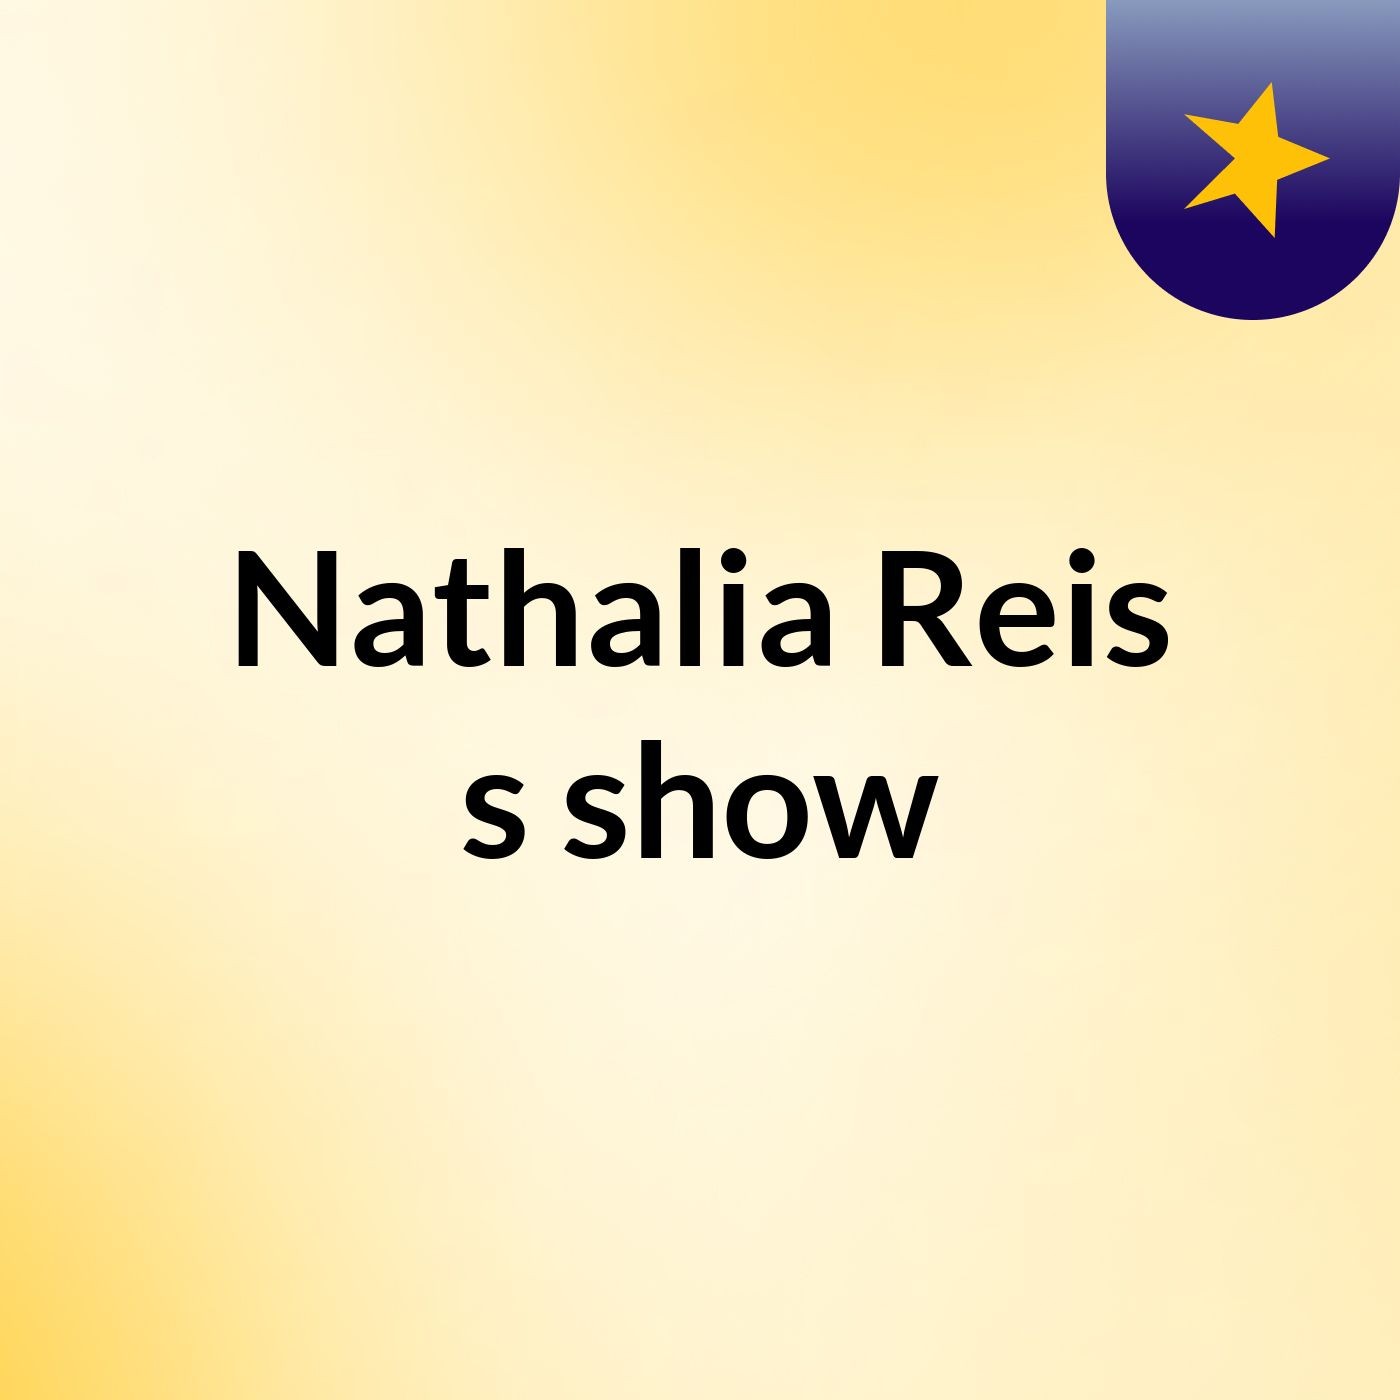 Nathalia Reis's show